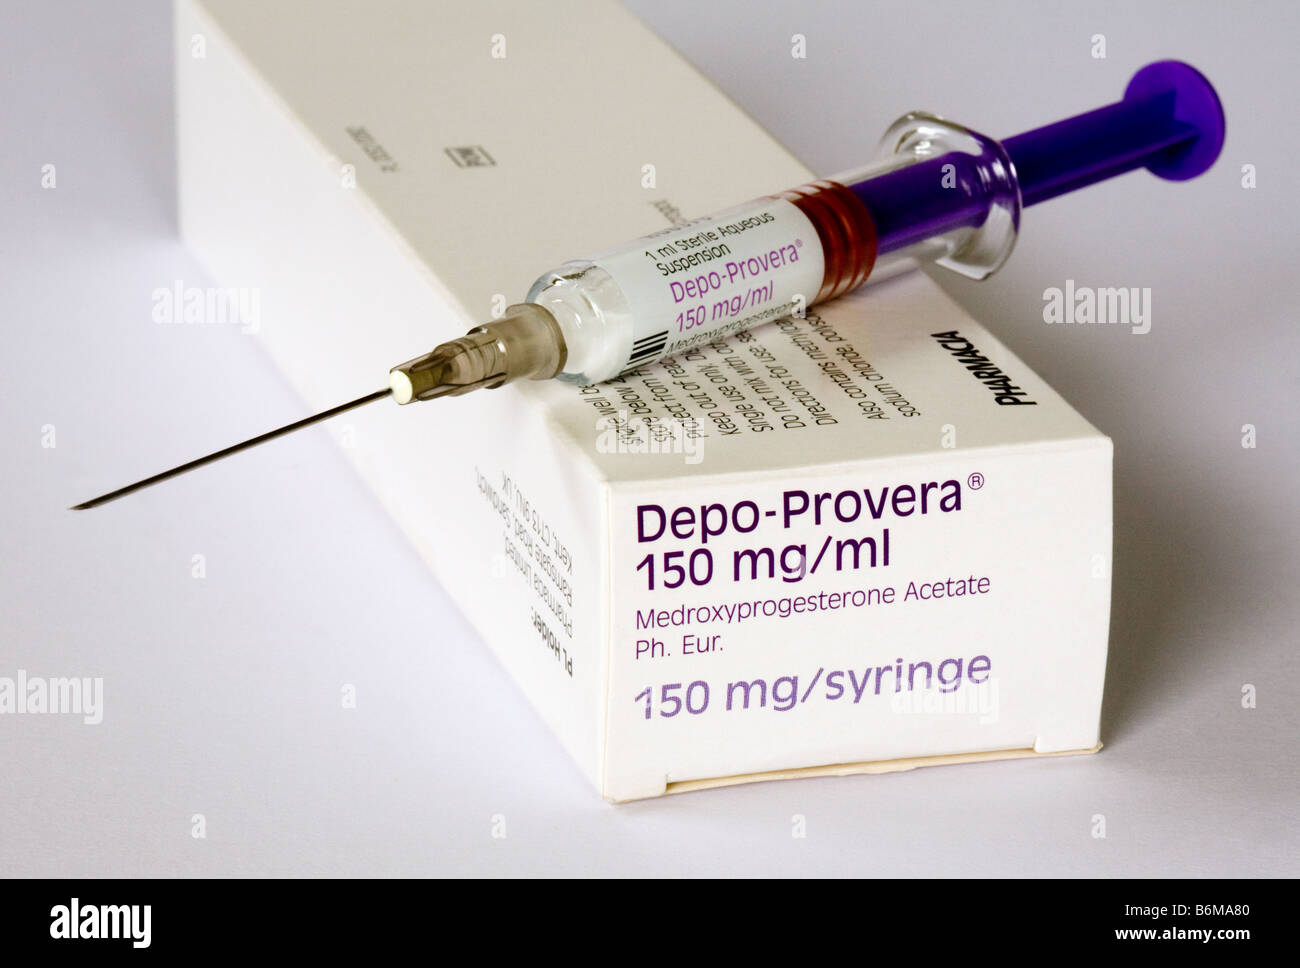 Depo Provera injectable contraceptive female contraception, UK Stock Photo  - Alamy